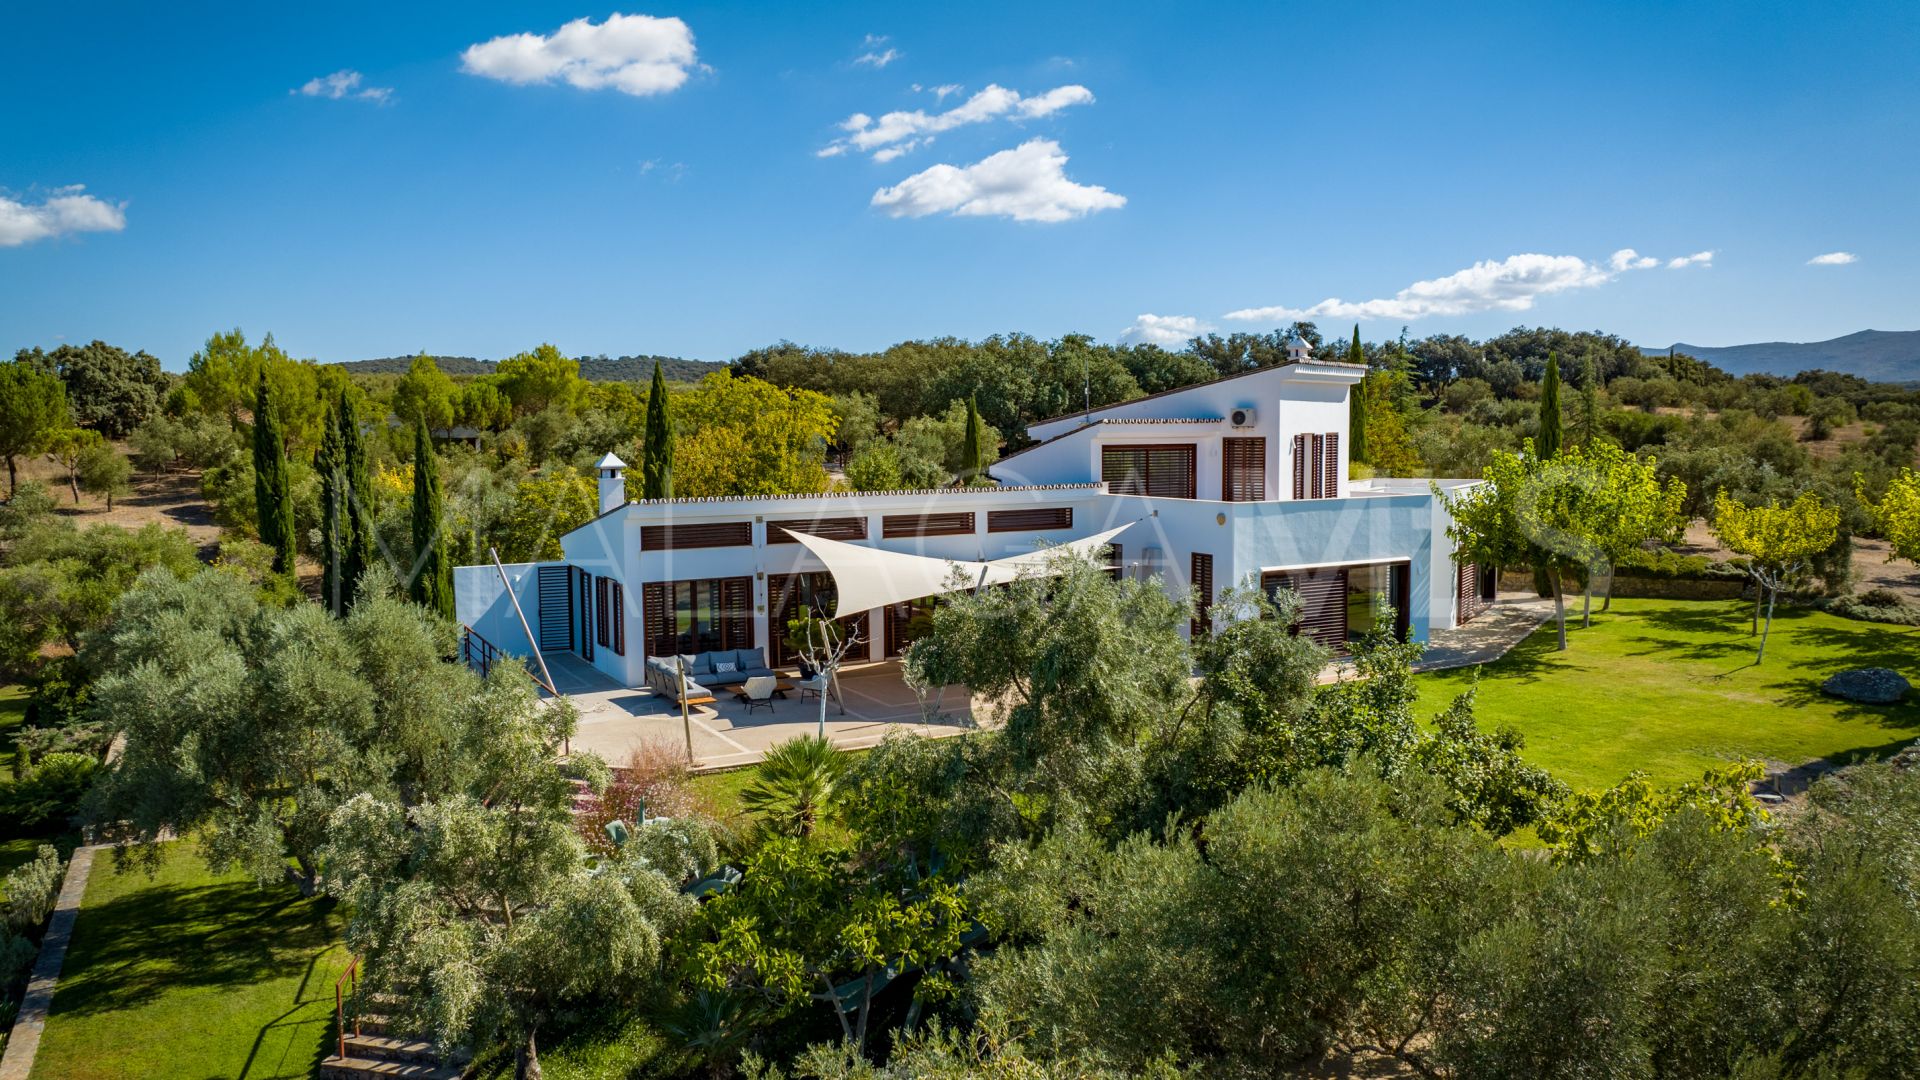 Casa de campo for sale in Ronda